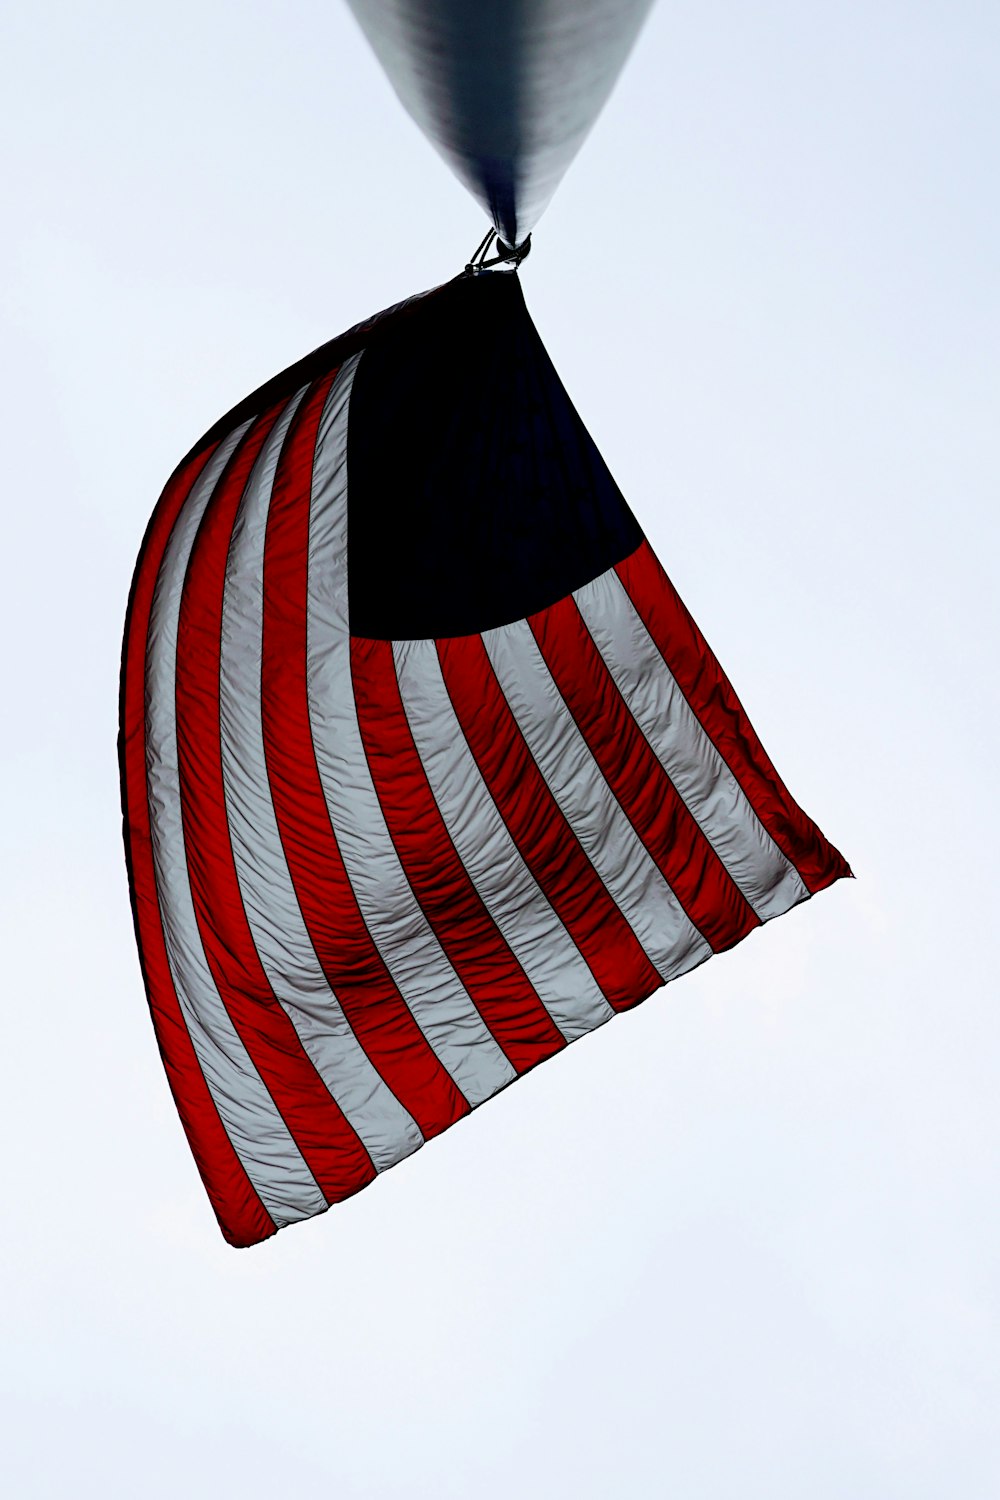 Drapeau des États-Unis d'Amérique sur un poteau en métal noir pendant la journée